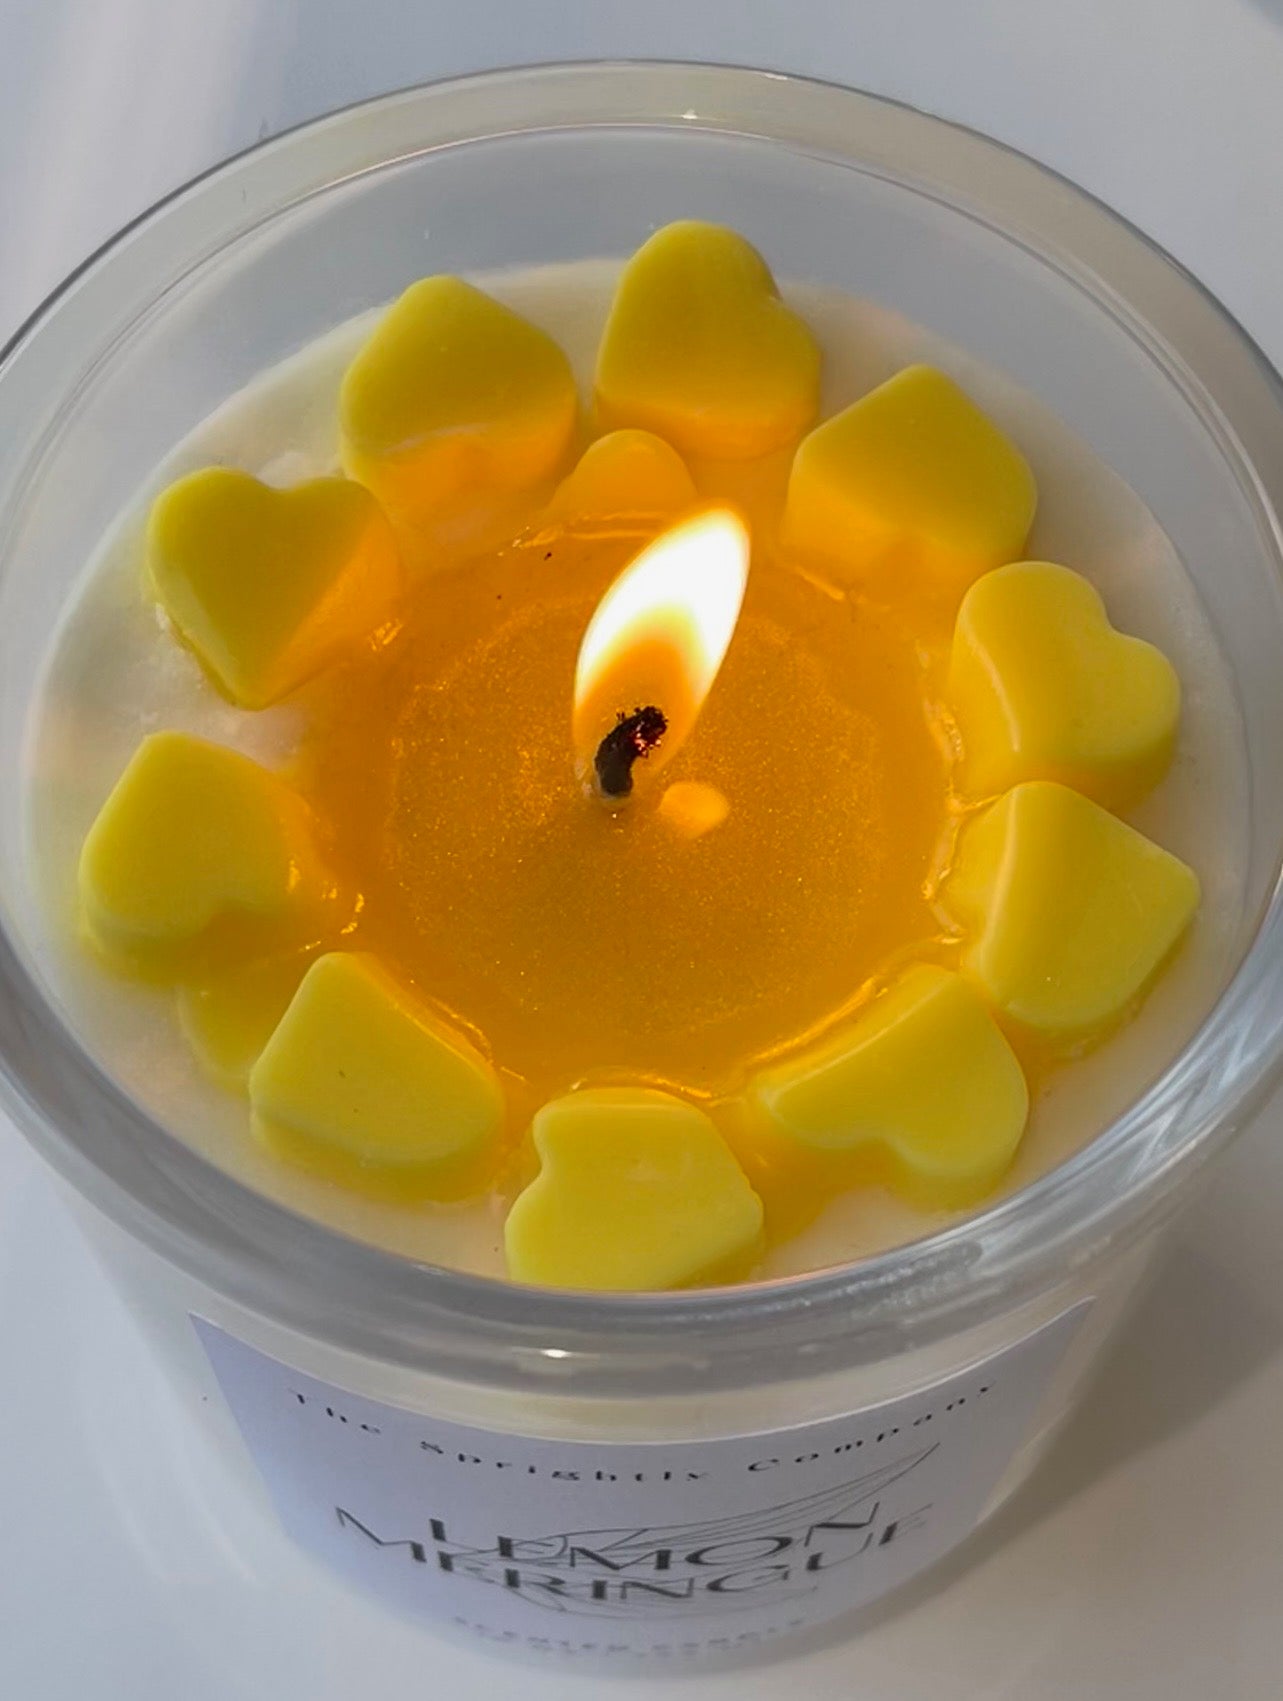 Lemon Meringue Sweetheart Candle